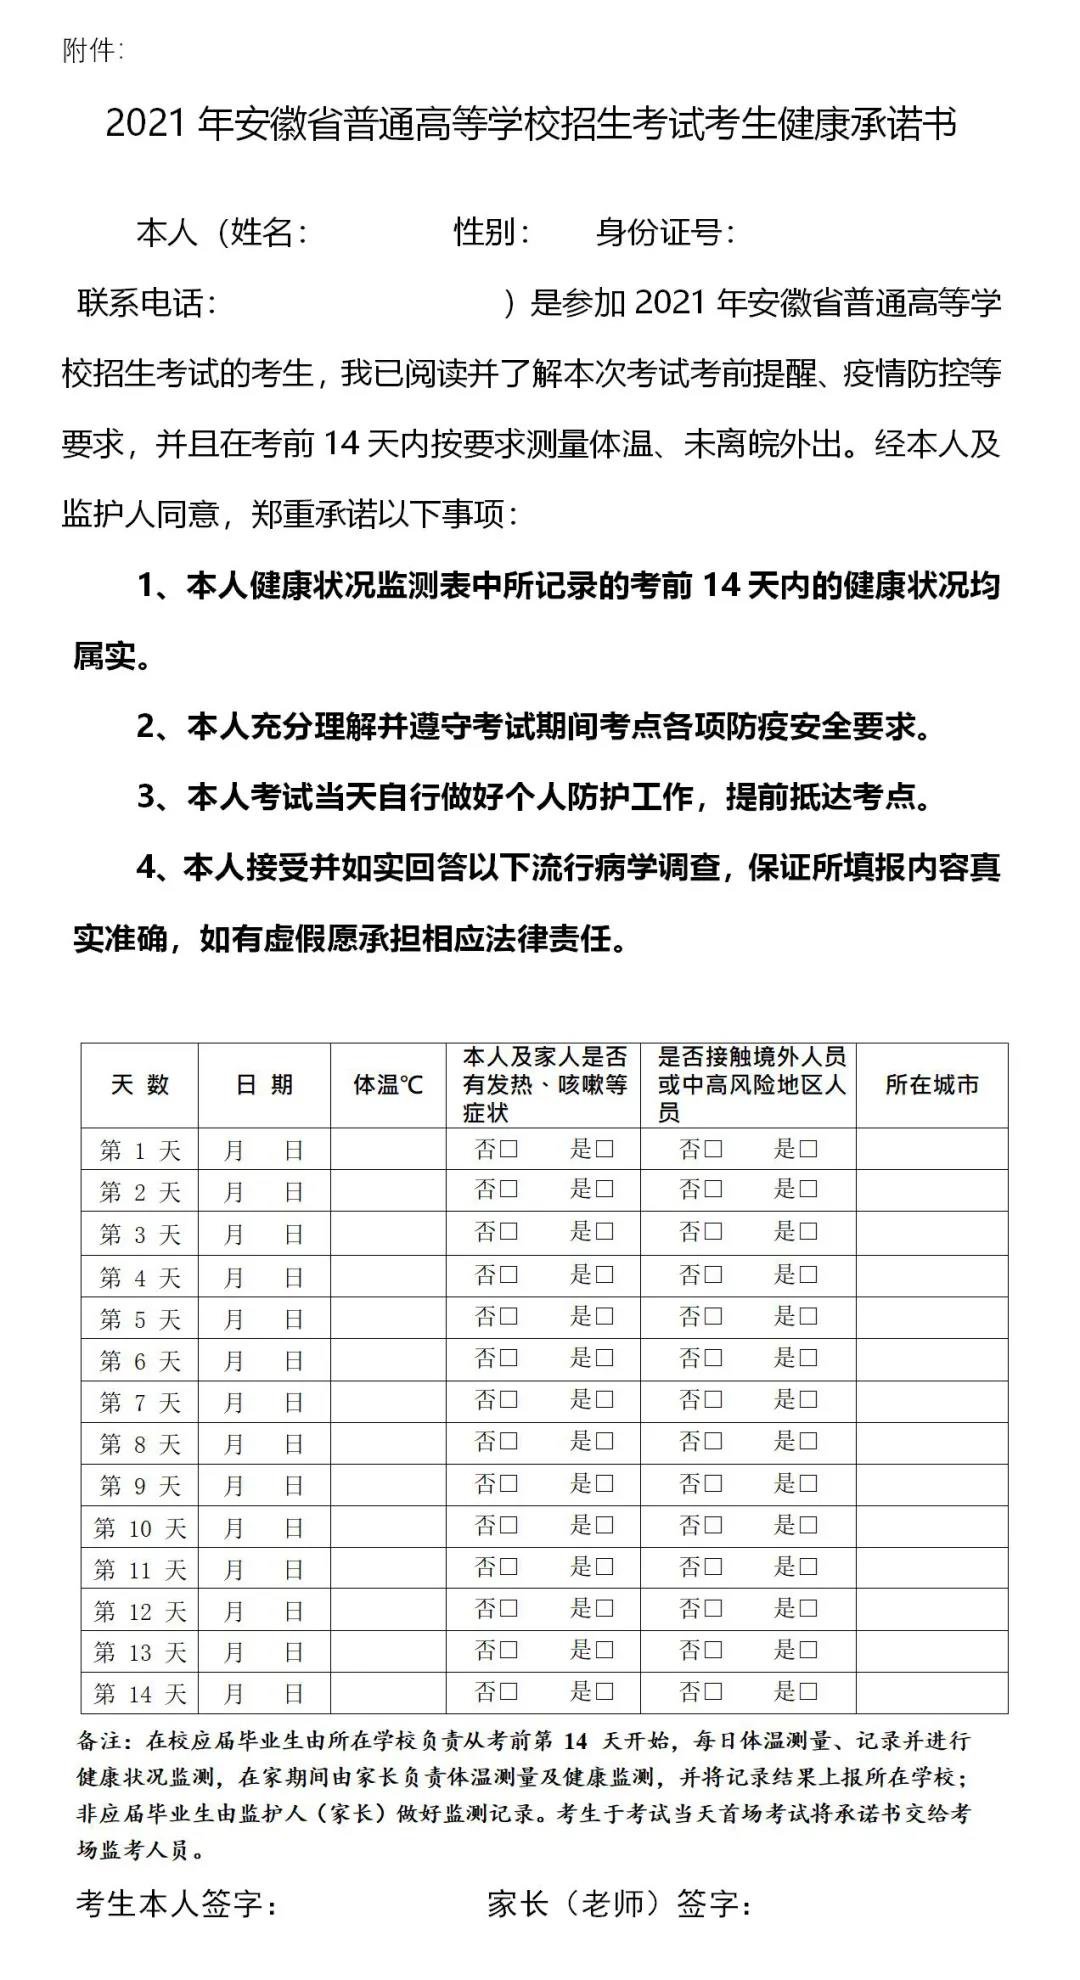 2021安徽省普通高等学校招生考试考生健康承诺书下载入口